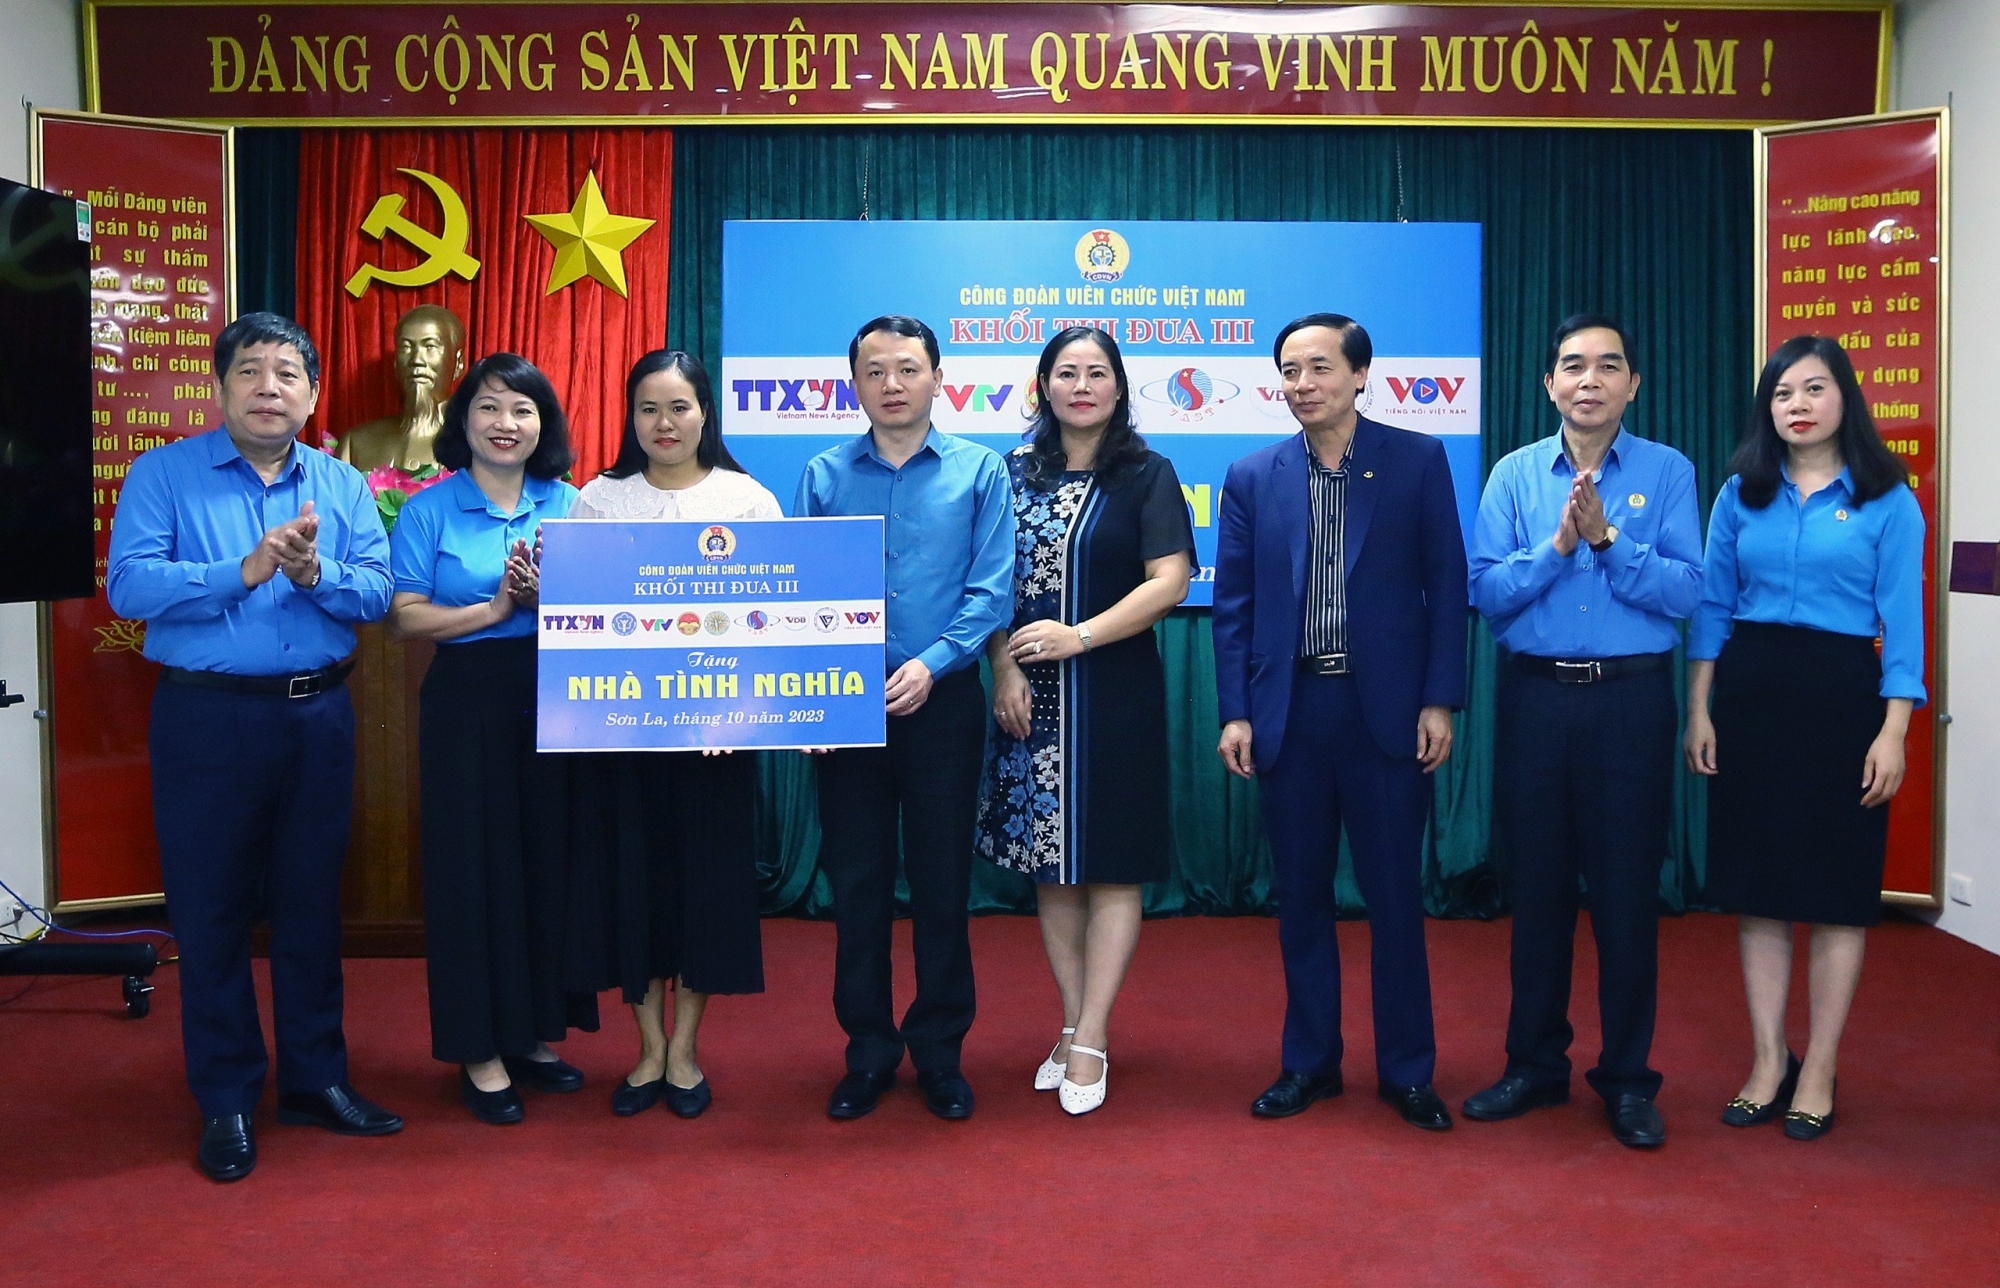 Khối thi đua III trao nhà tình nghĩa và tập huấn nghiệp vụ công đoàn tại Sơn La